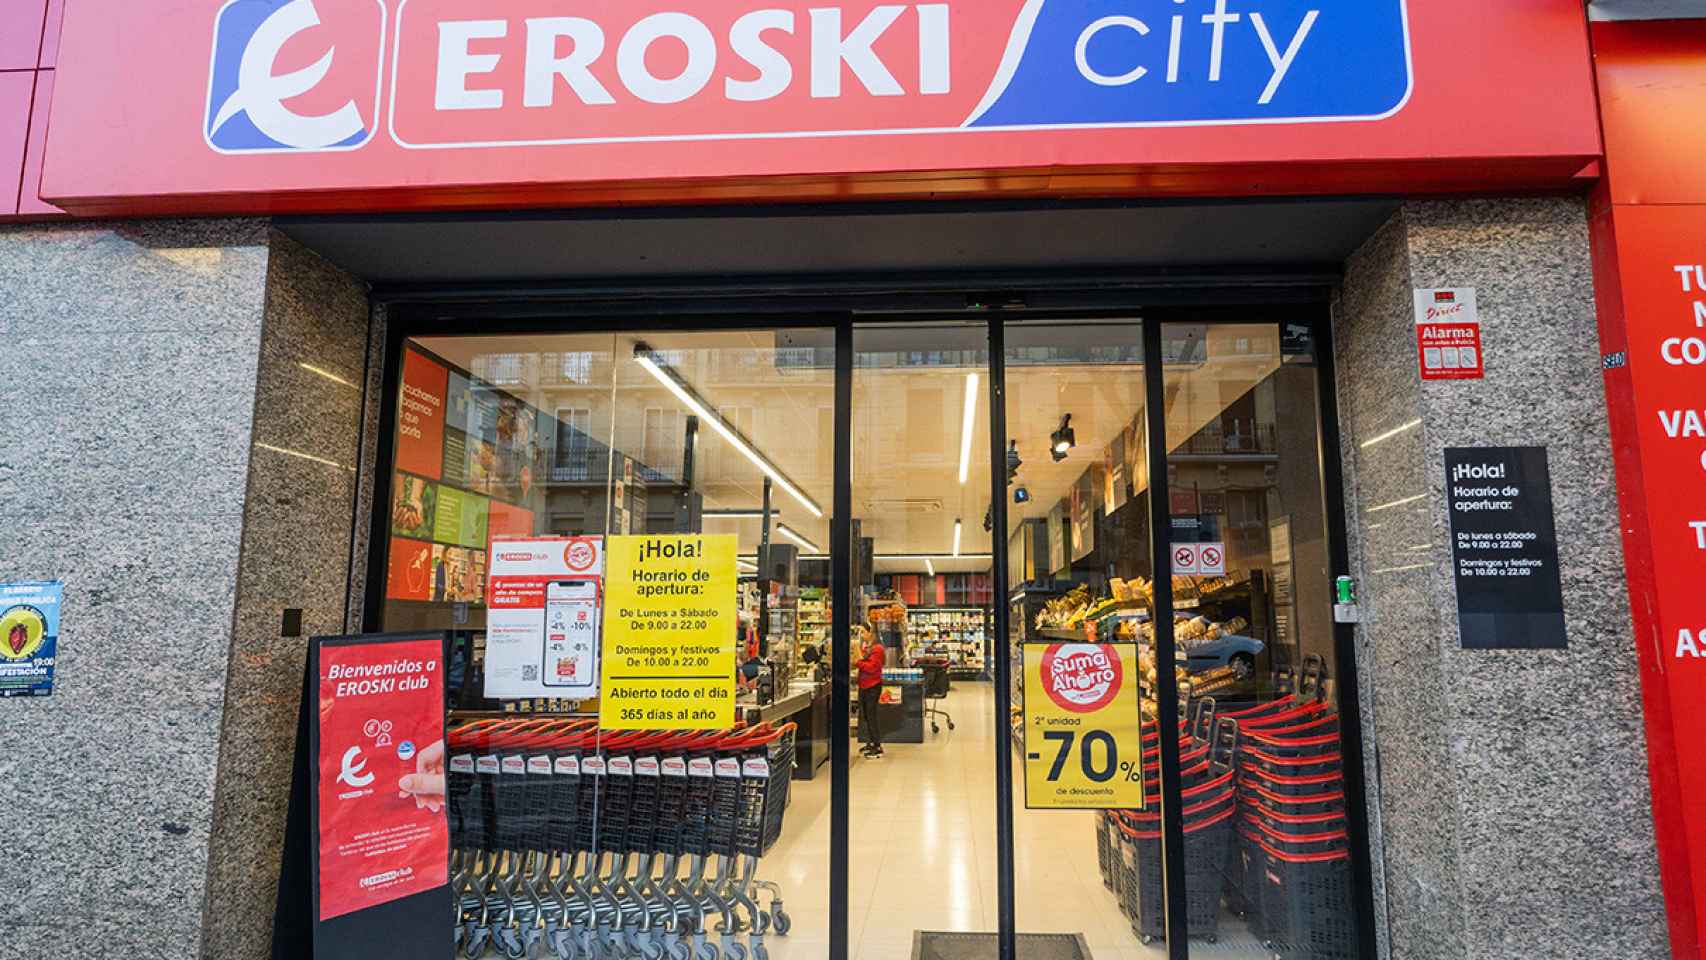 La entrada de un supermercado de Eroski City.